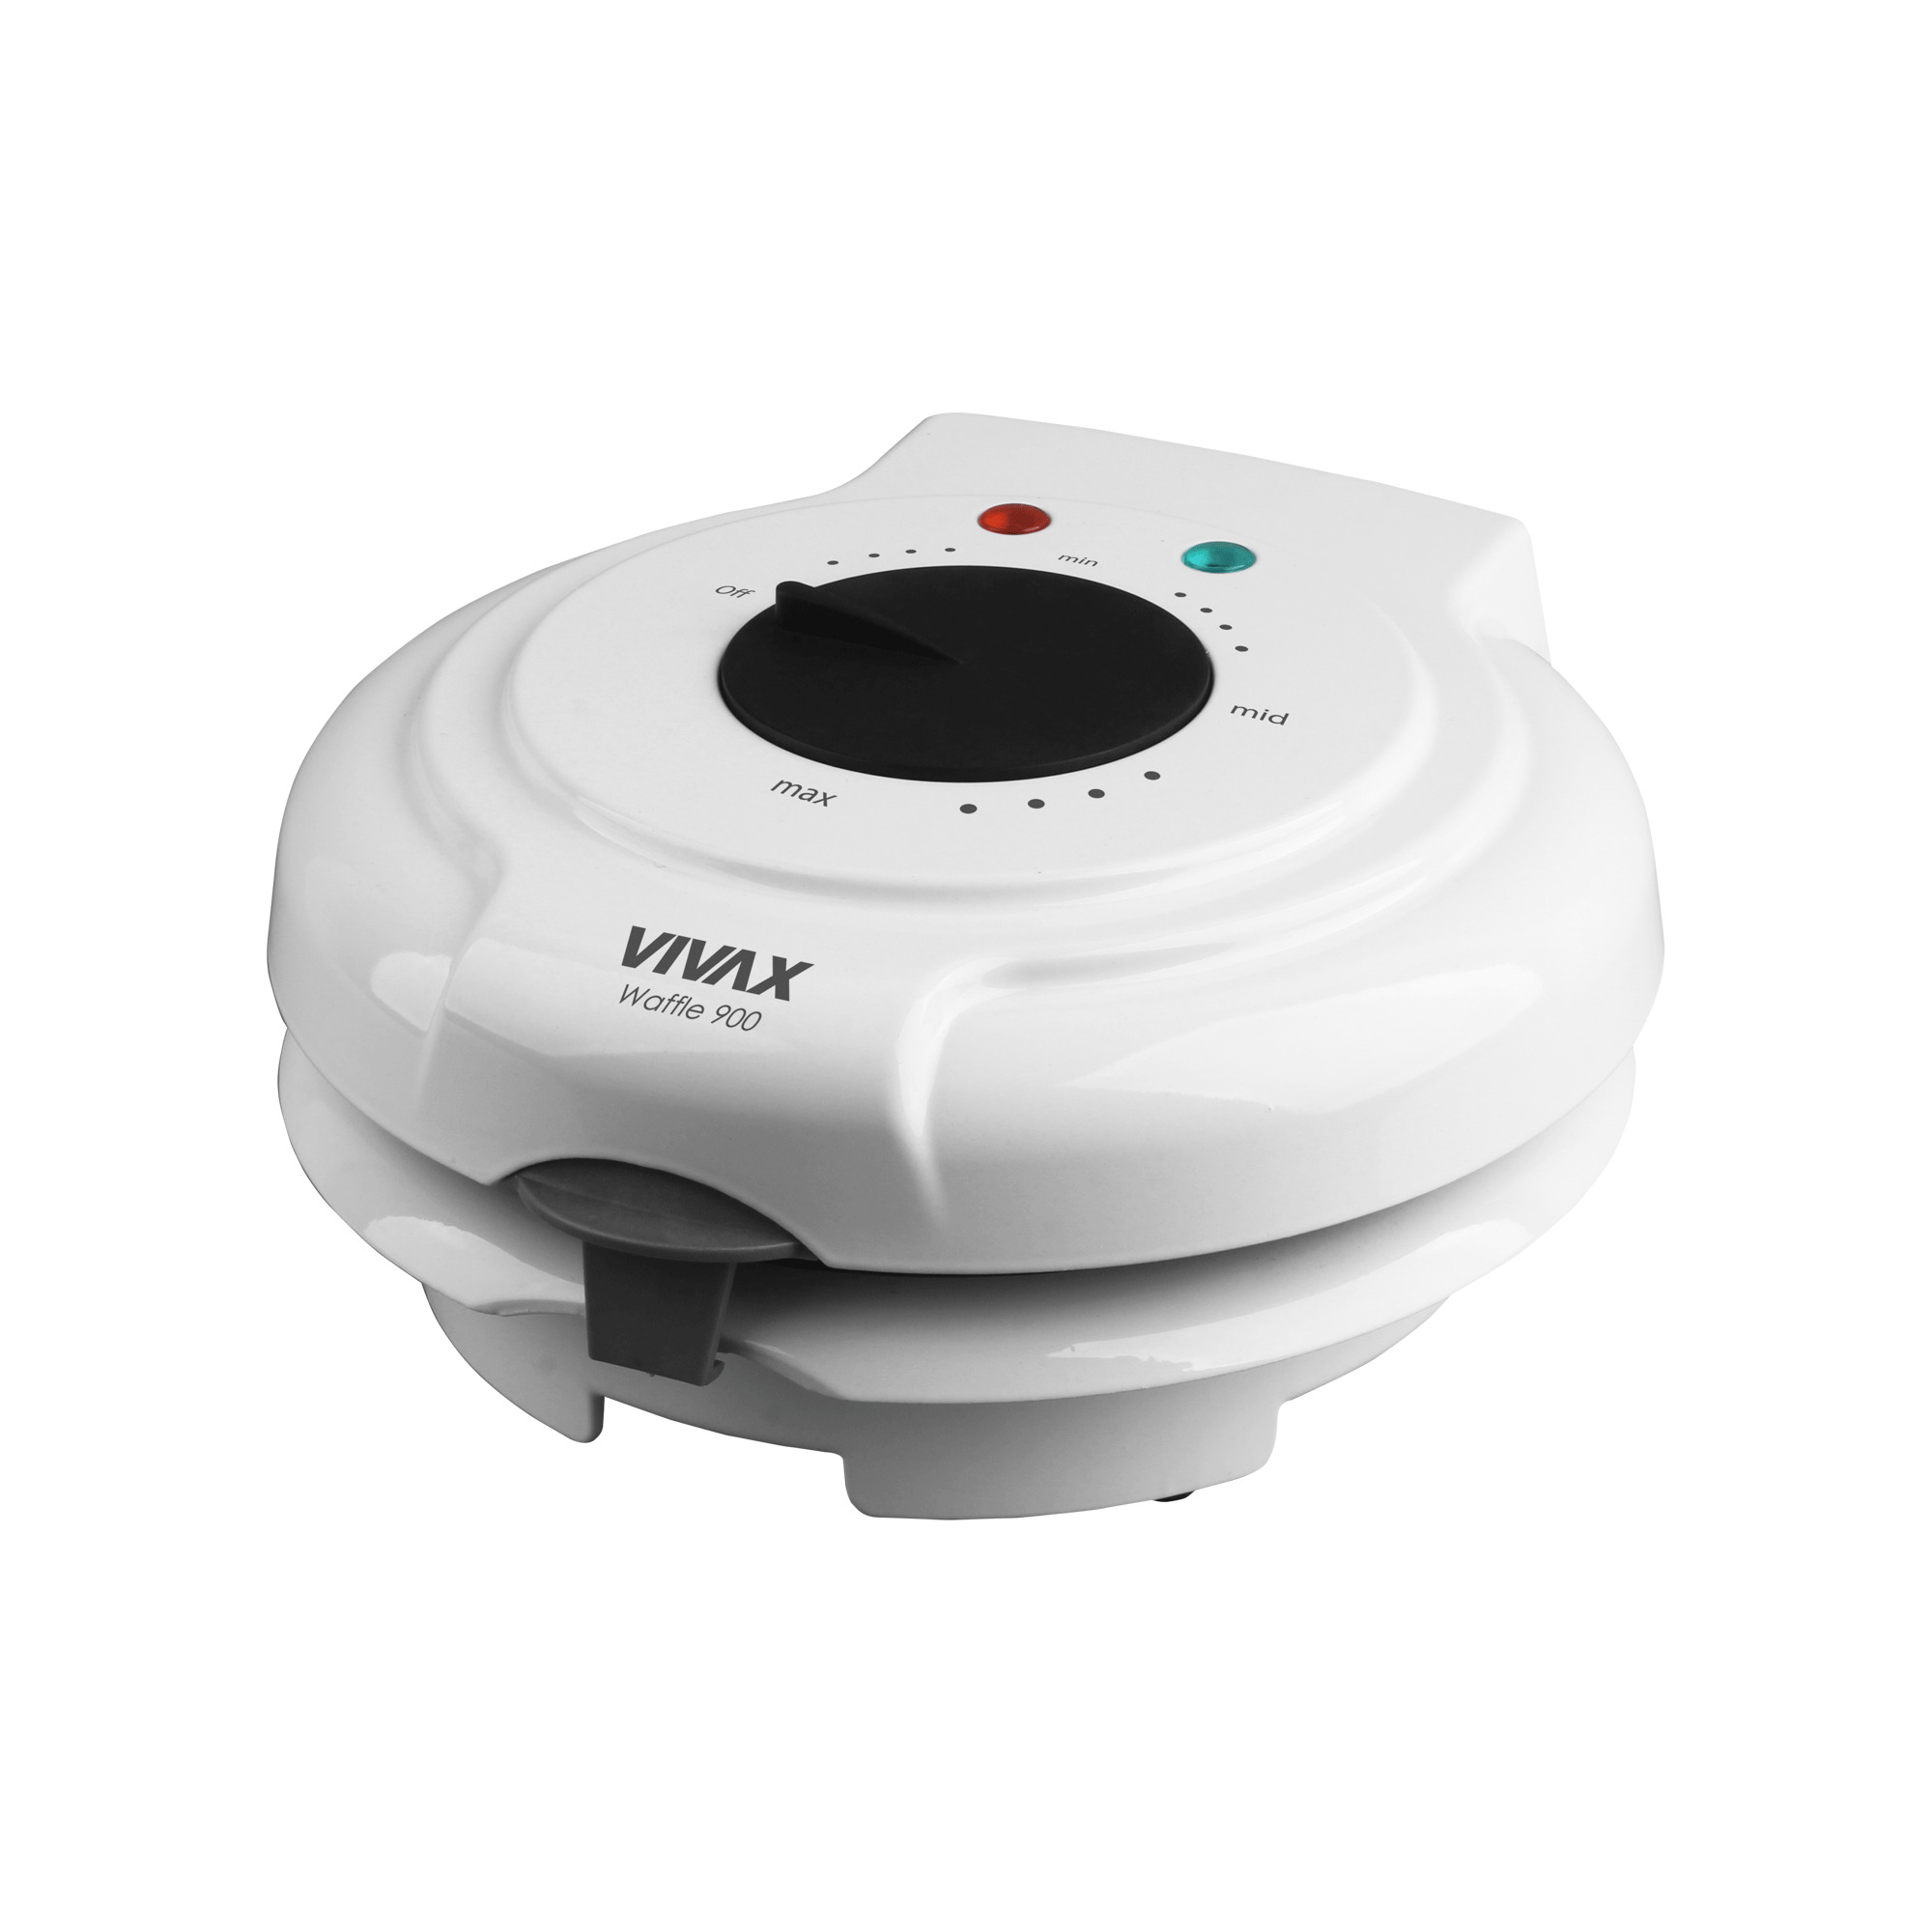 Aparat waffe Vivax WM-900WH, 900W, 5 forme, termostat, indicator luminos, protectie supraincalzire, suprafata antiaderenta, alb